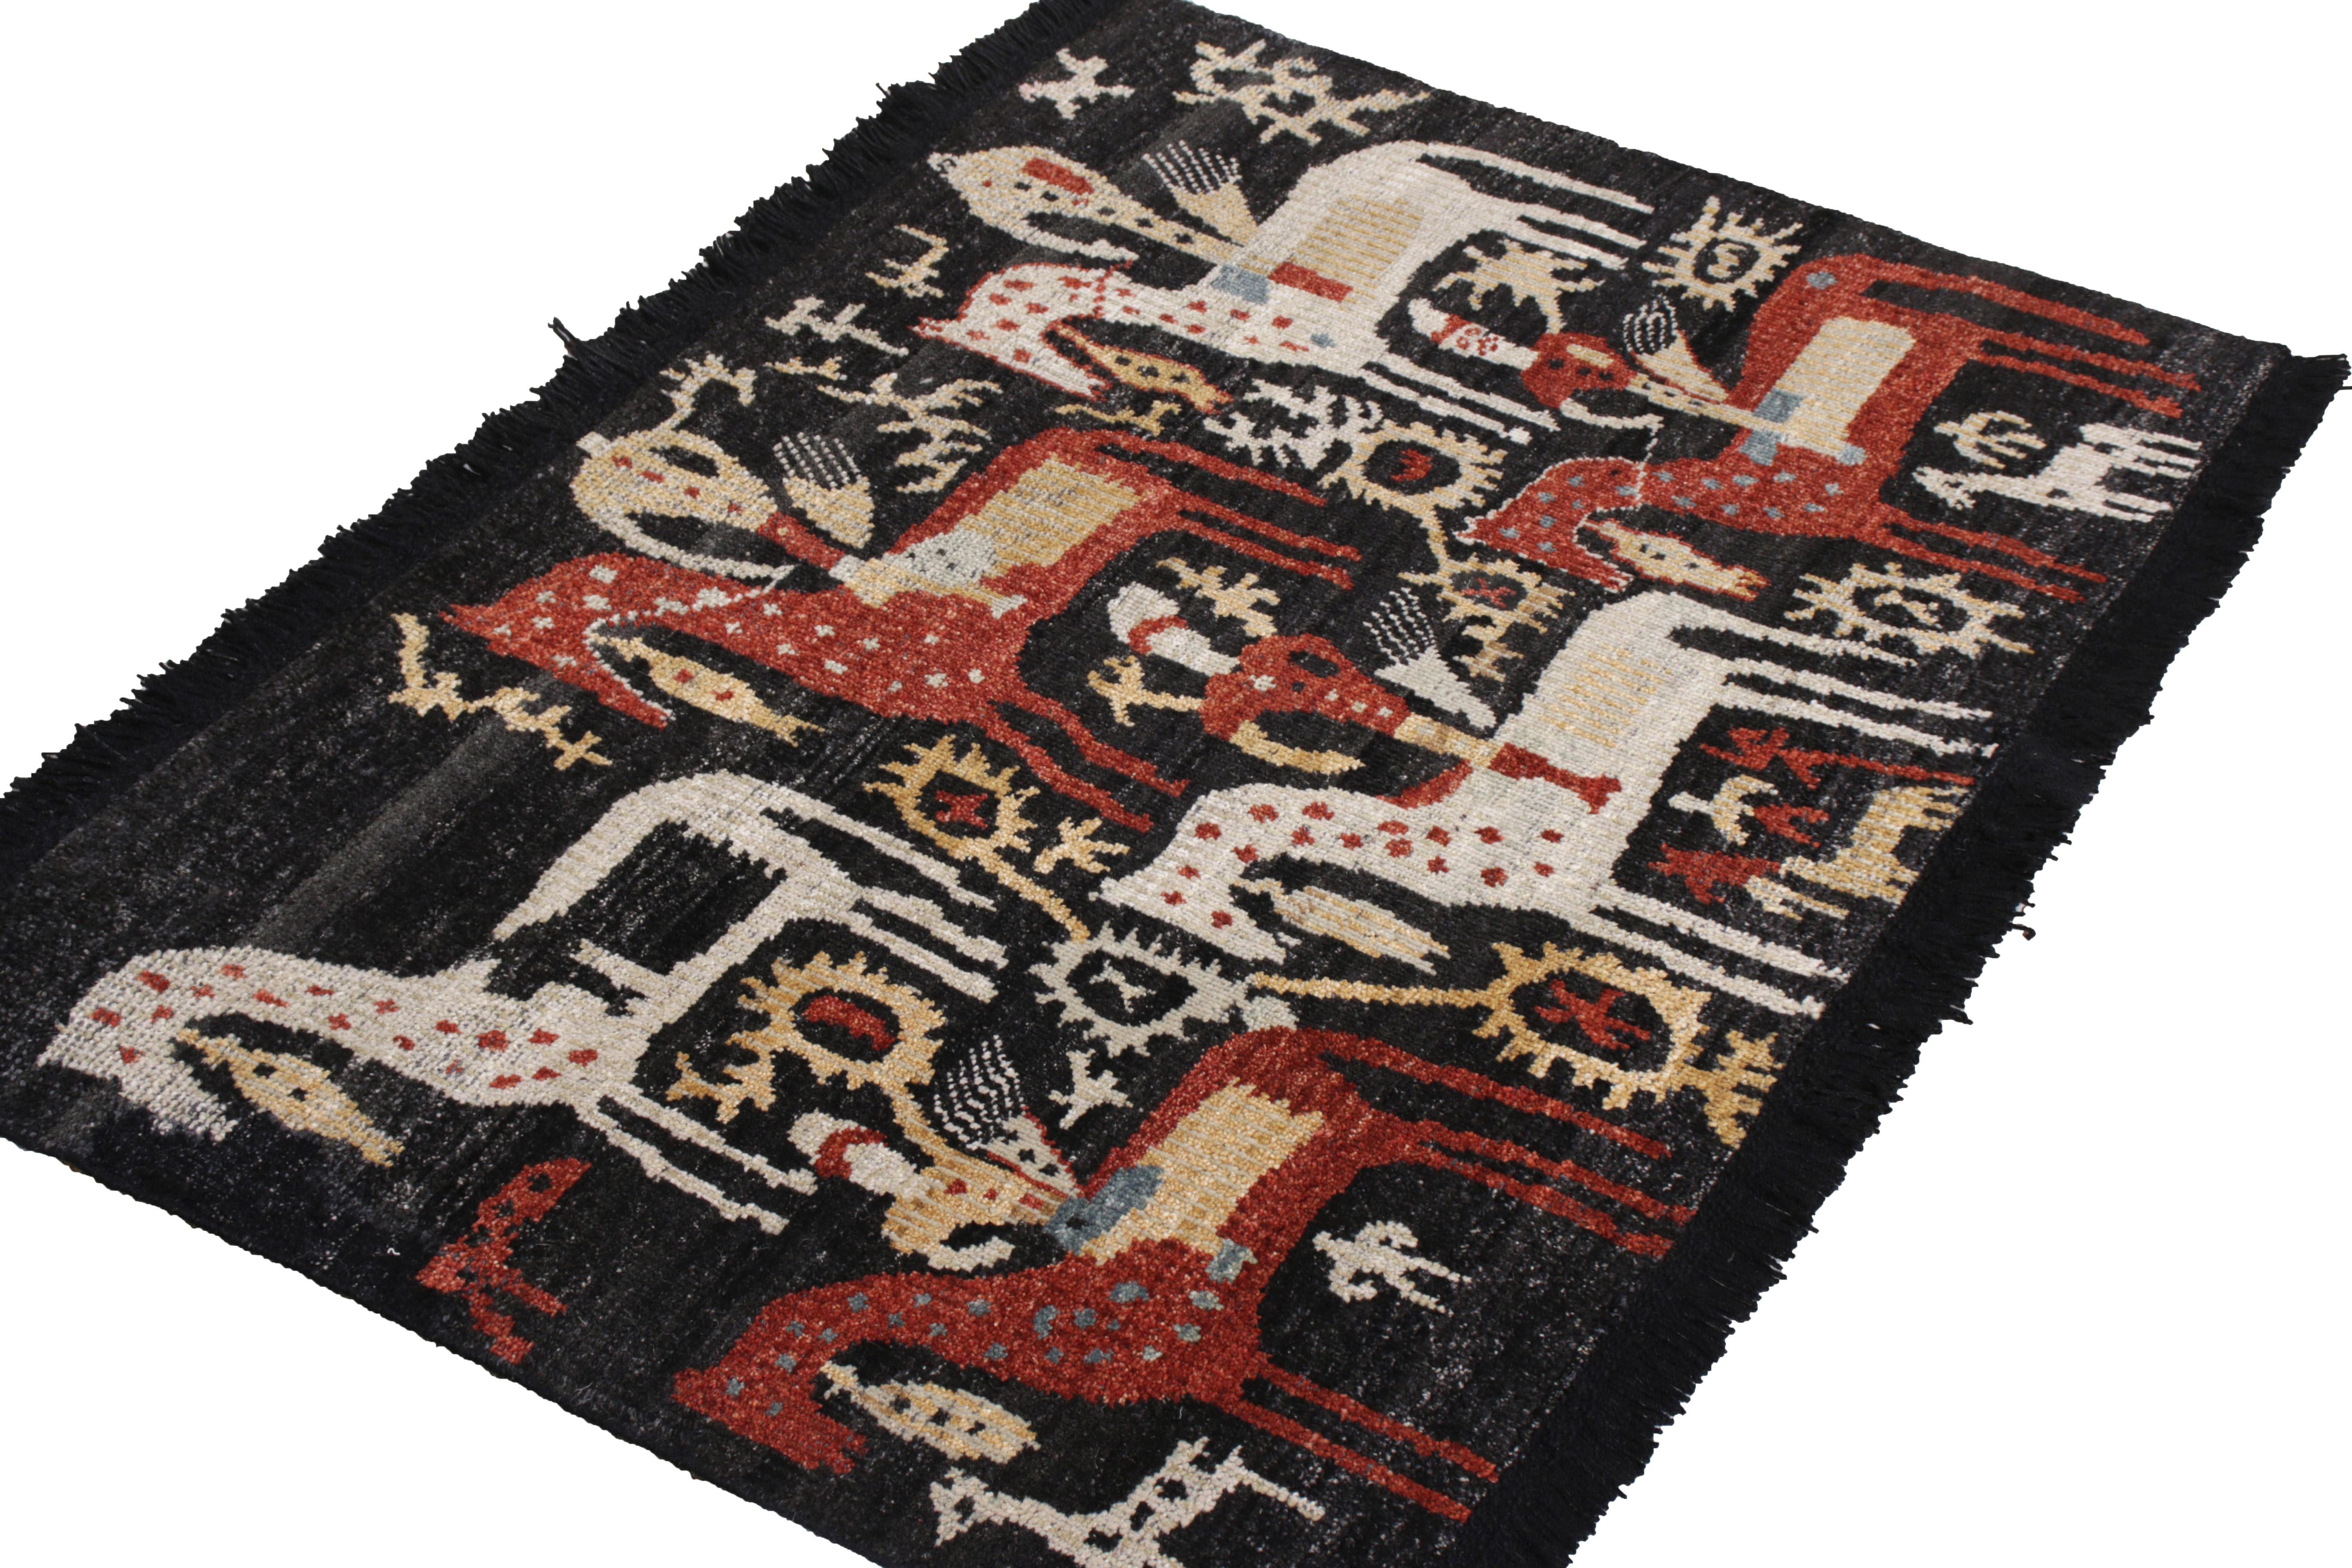 Ce tapis pictural 3 x 4 représente des tapis personnalisés de la collection Burano de Rug & Kilim, une collection classique personnalisée nouée à la main dans une laine Ghazni particulièrement douce. Ce modèle de tapis classique en rouge, blanc et